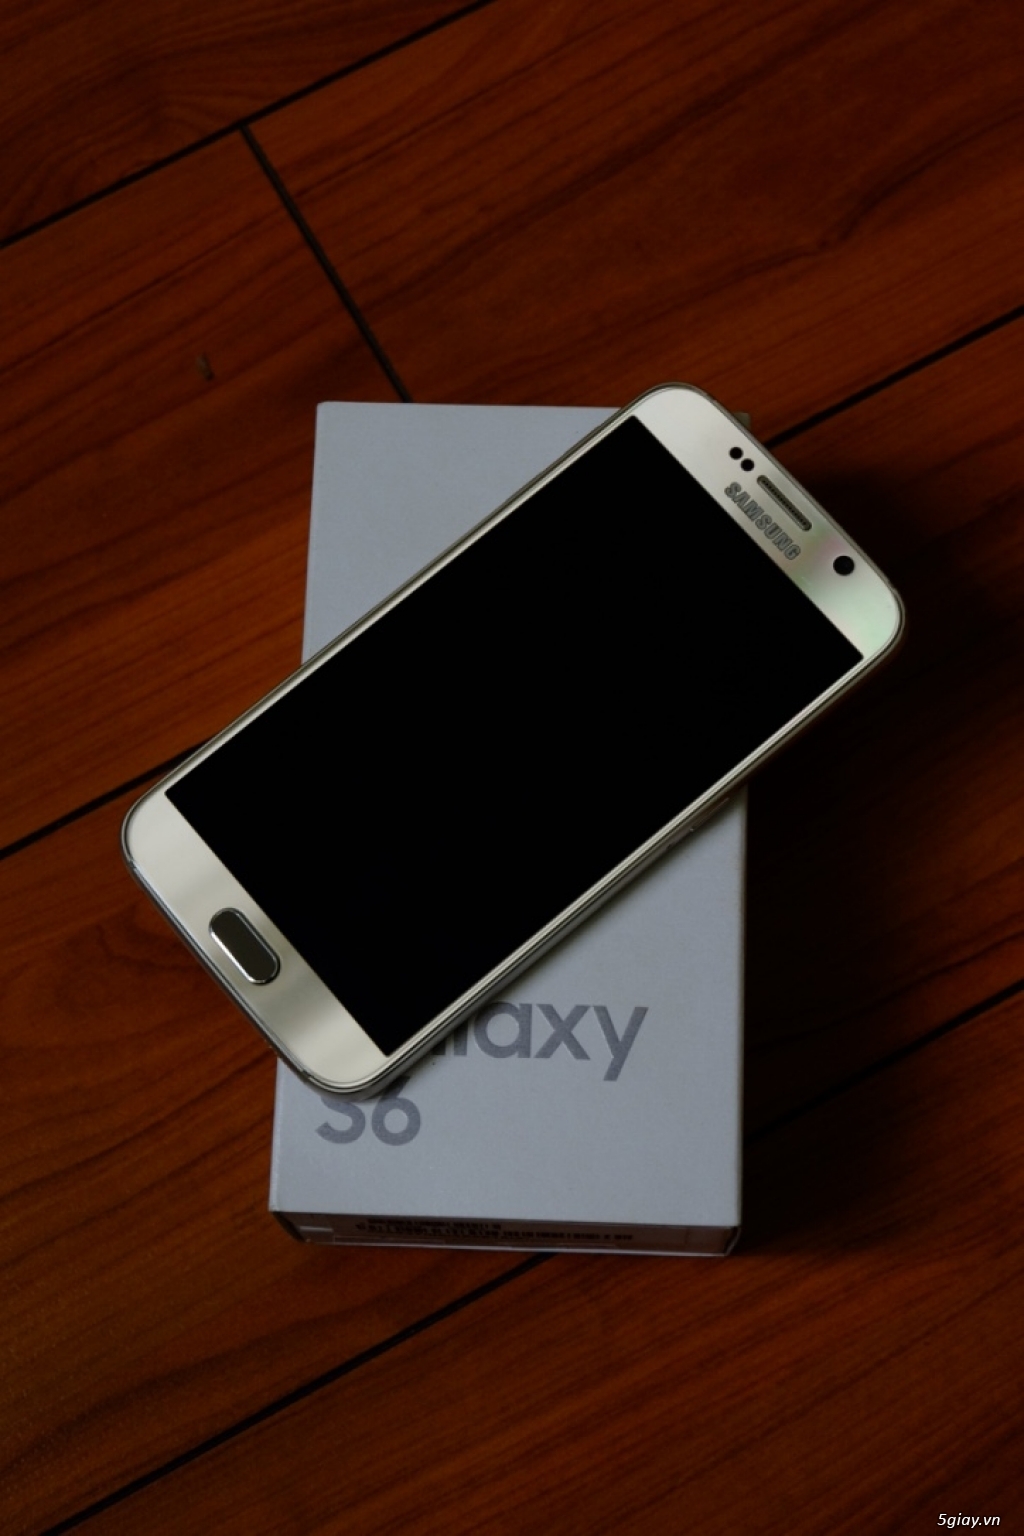 Galaxy S6 gold chính hãng, đẹp long lanh, bảo hành còn 9 tháng